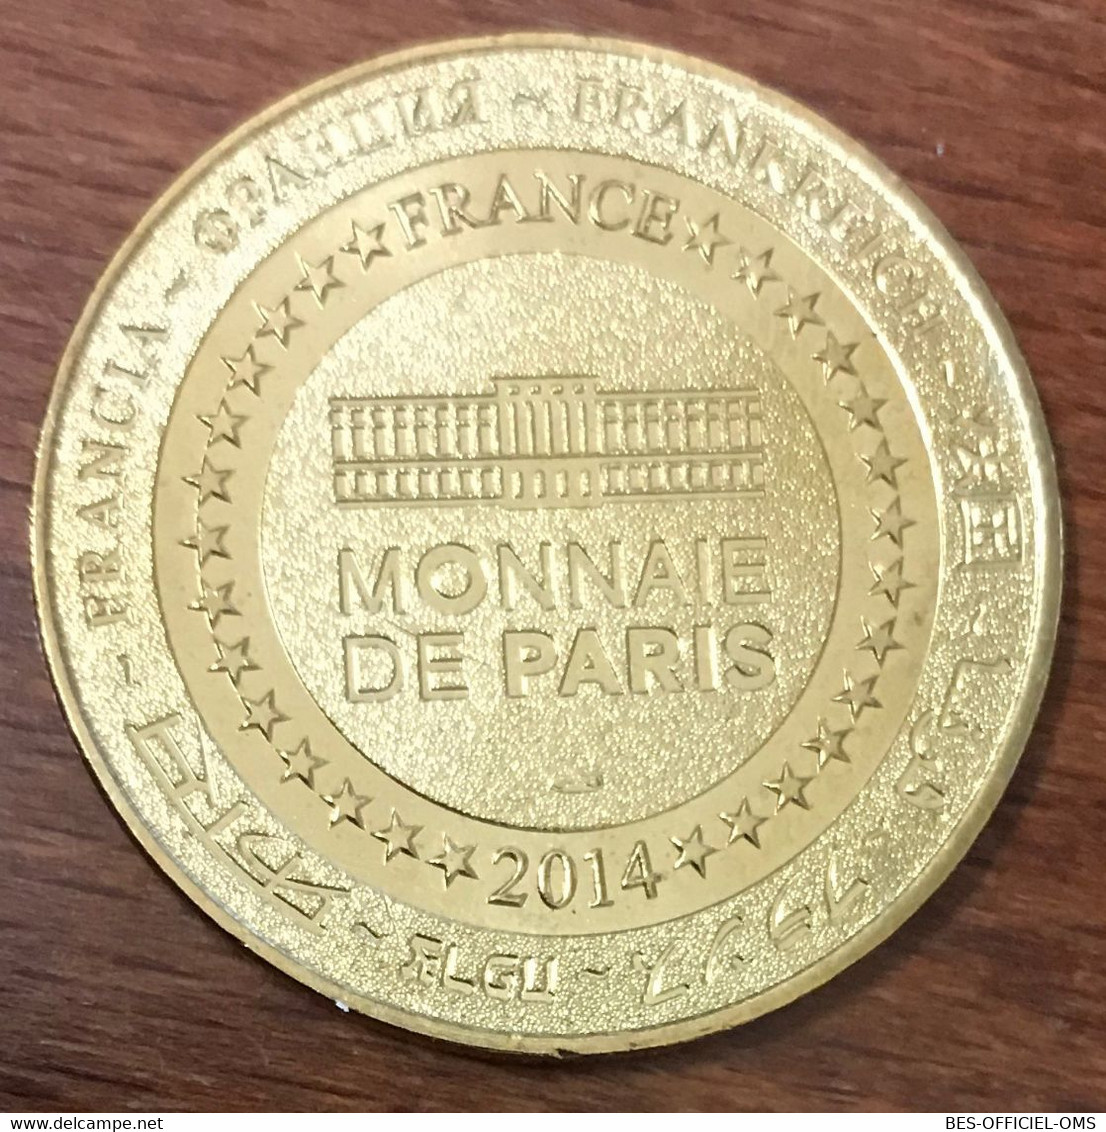 33 SAINT-ÉMILION L'ÉGLISE MDP 2014 MÉDAILLE SOUVENIR MONNAIE DE PARIS JETON TOURISTIQUE MEDALS COINS TOKENS - 2014